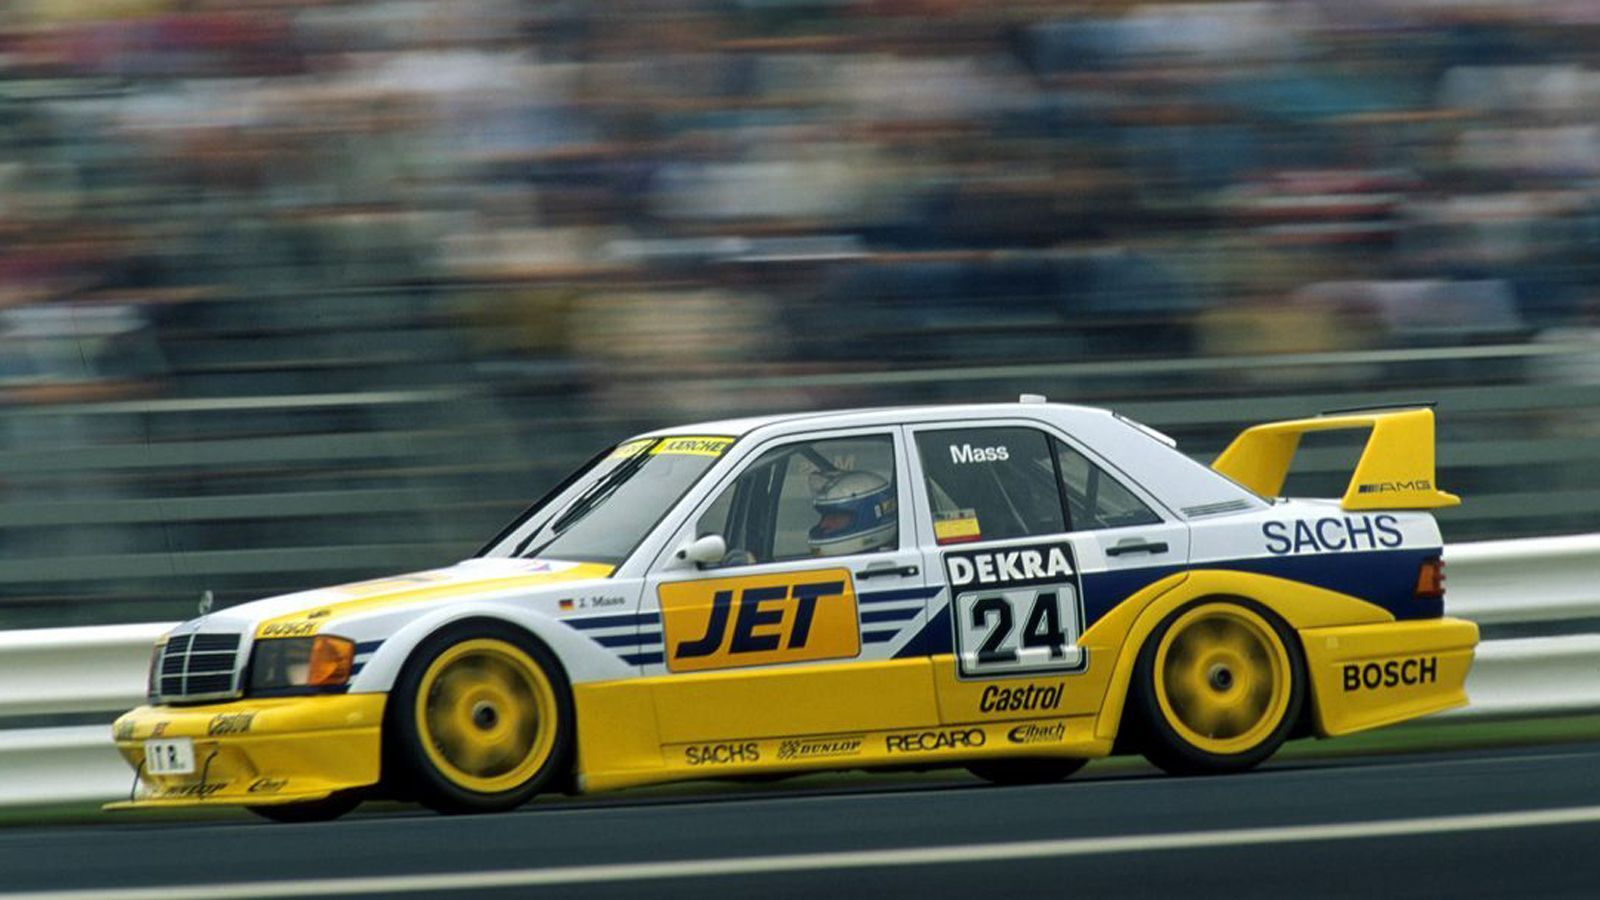 
                <strong>Jochen Mass (1991)</strong><br>
                Der ehemalige Formel-1-Pilot absolvierte nach seinem Karriereende in der Königsklasse vier Rennen in der DTM. Mit einem Mercedes 190E 2.5-16 Evo2 fuhr der Deutsche 1991 in Zolder, in Wunstorf und zweimal in Diepholz. Ein 23. Platz war dabei sein bestes Rennergebnis.
              